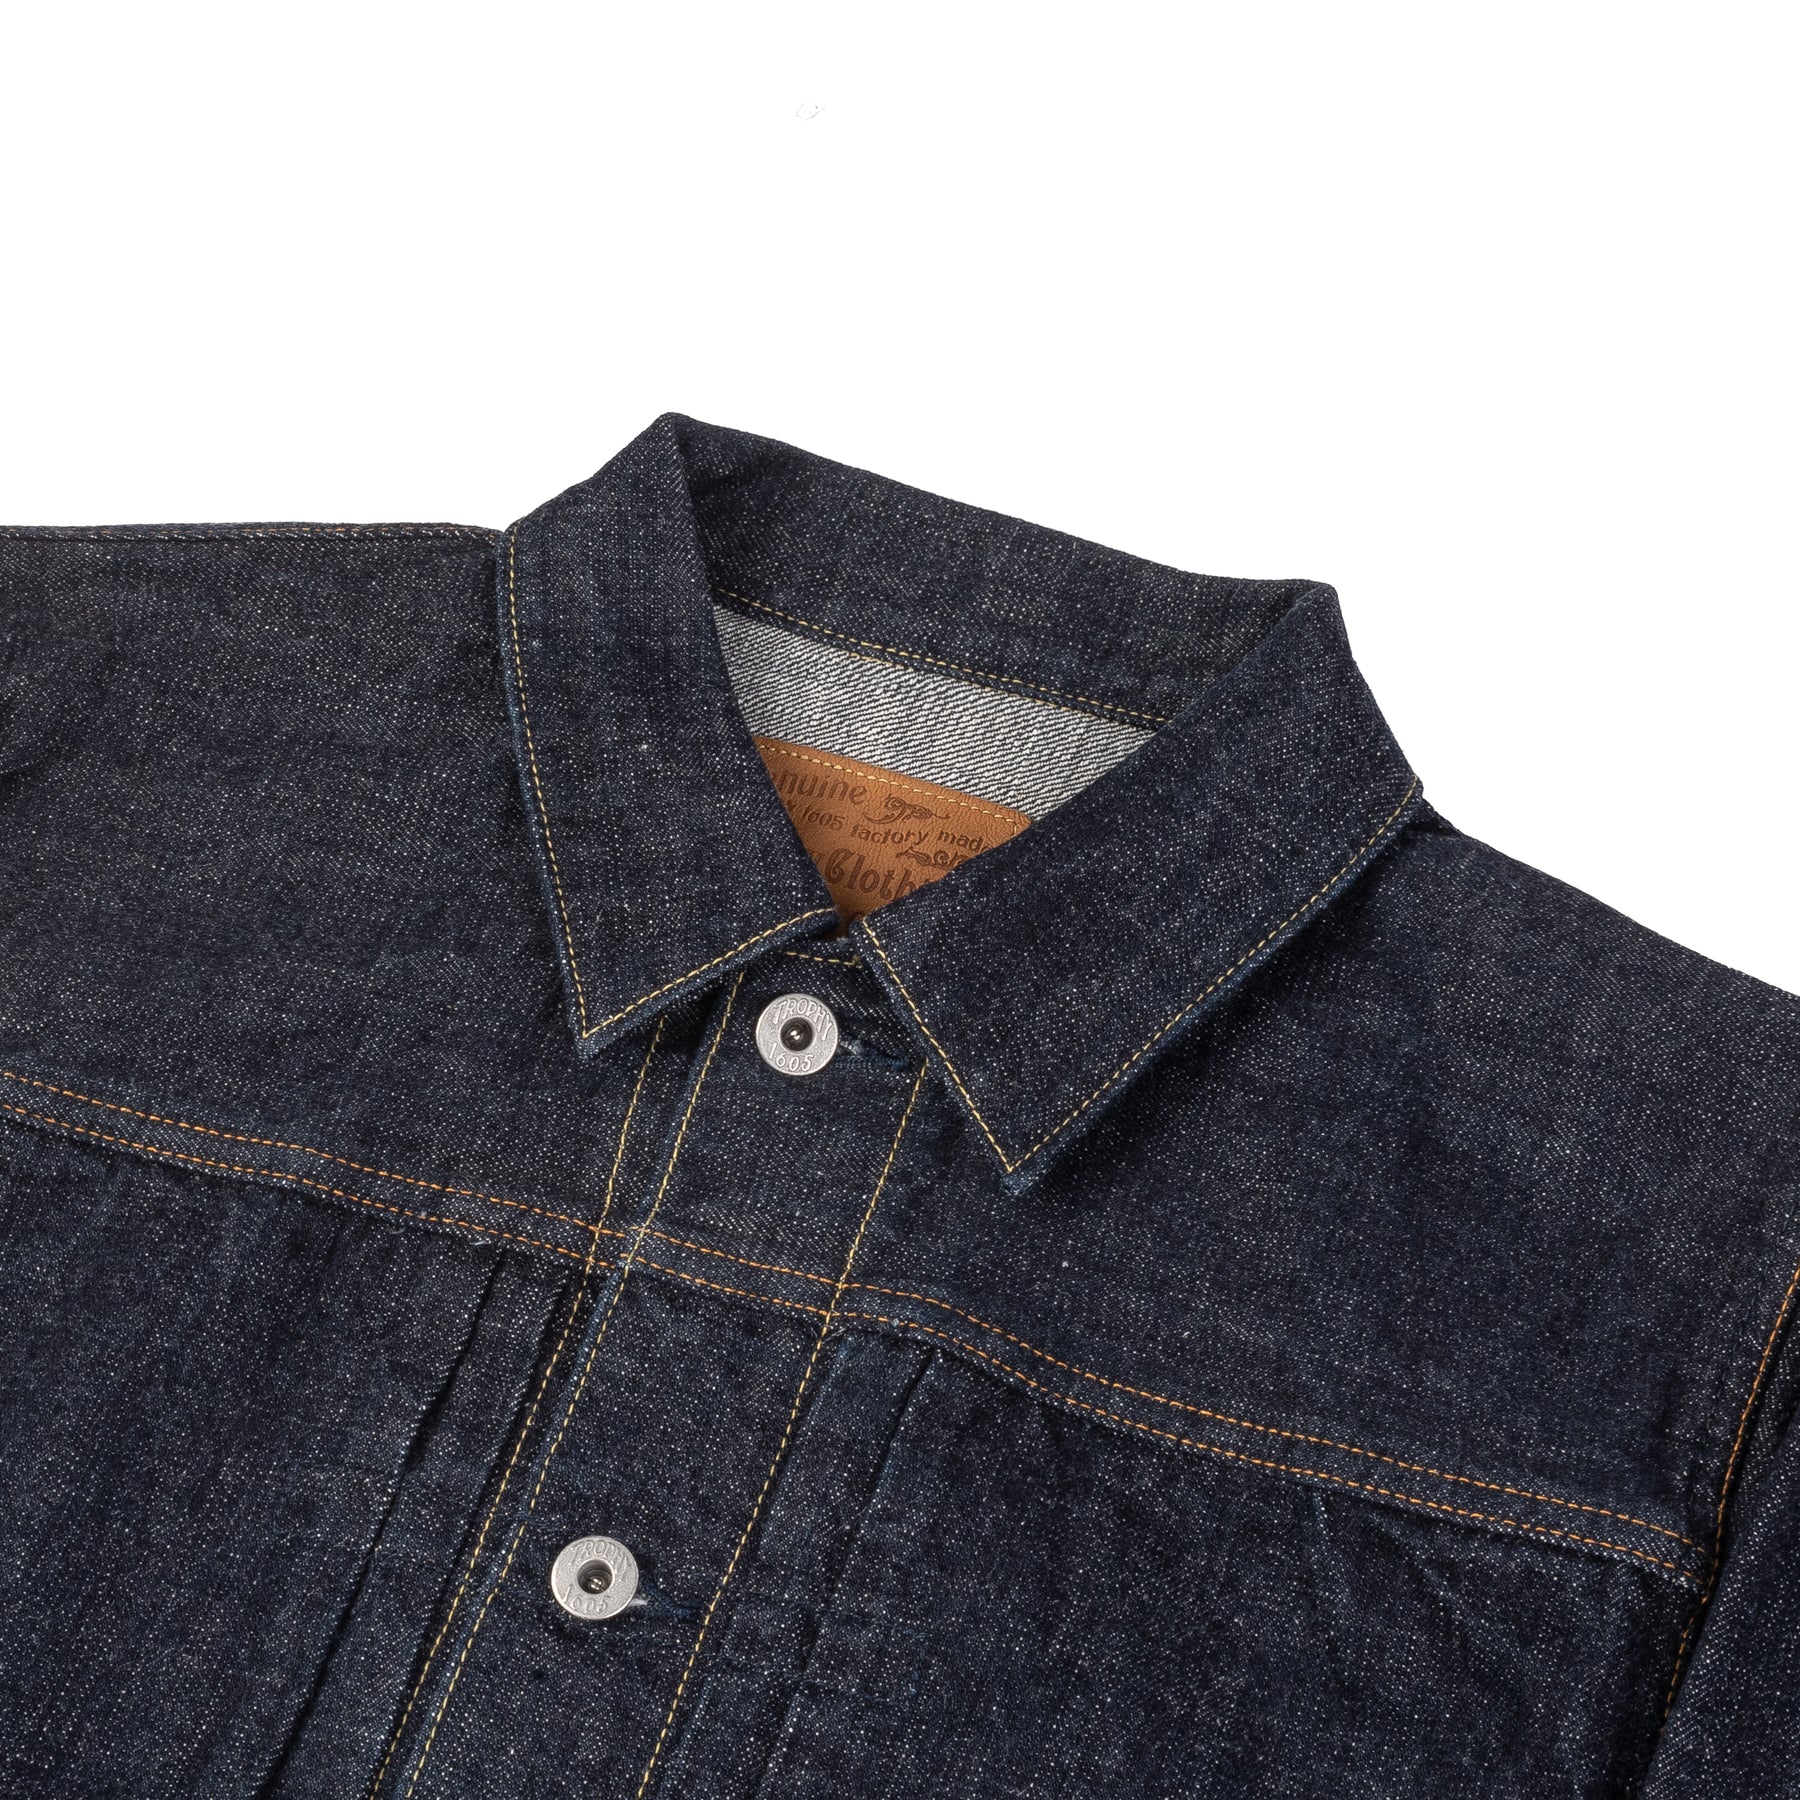 Trophy Clothing 2605 Dirt Denim Jacket Indigo | Sonder Supplies